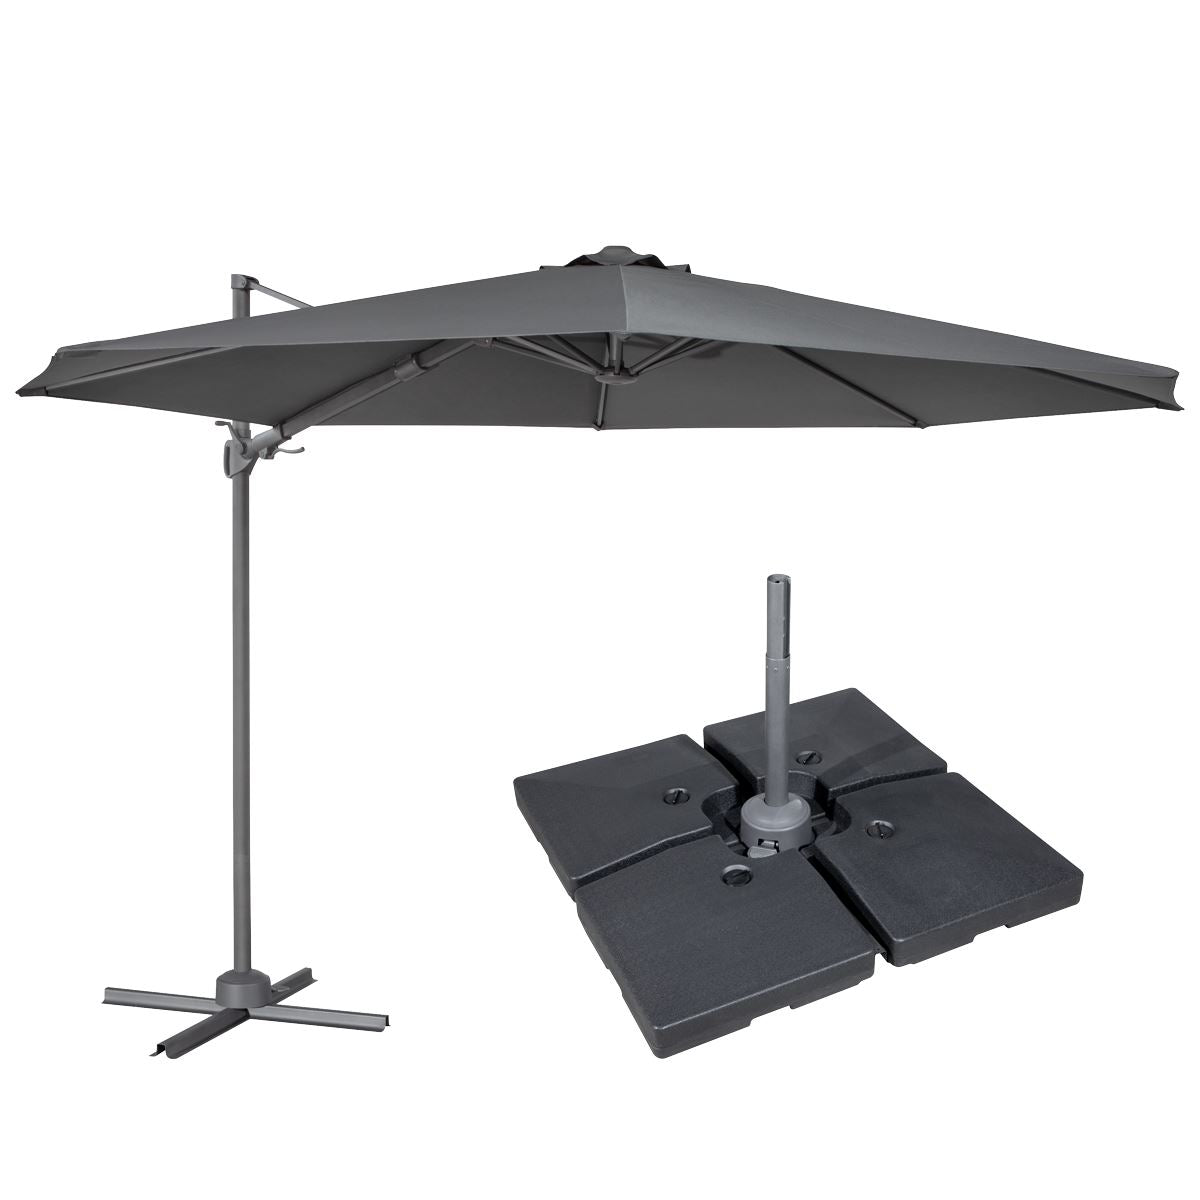 Dellonda Ø3m Cantilever Parasol/Umbrella, Cover and Base Bundle, 8 Rib, Crank Handle, 360° Rotation, 60° Tilt, Grey Canopy - DG272